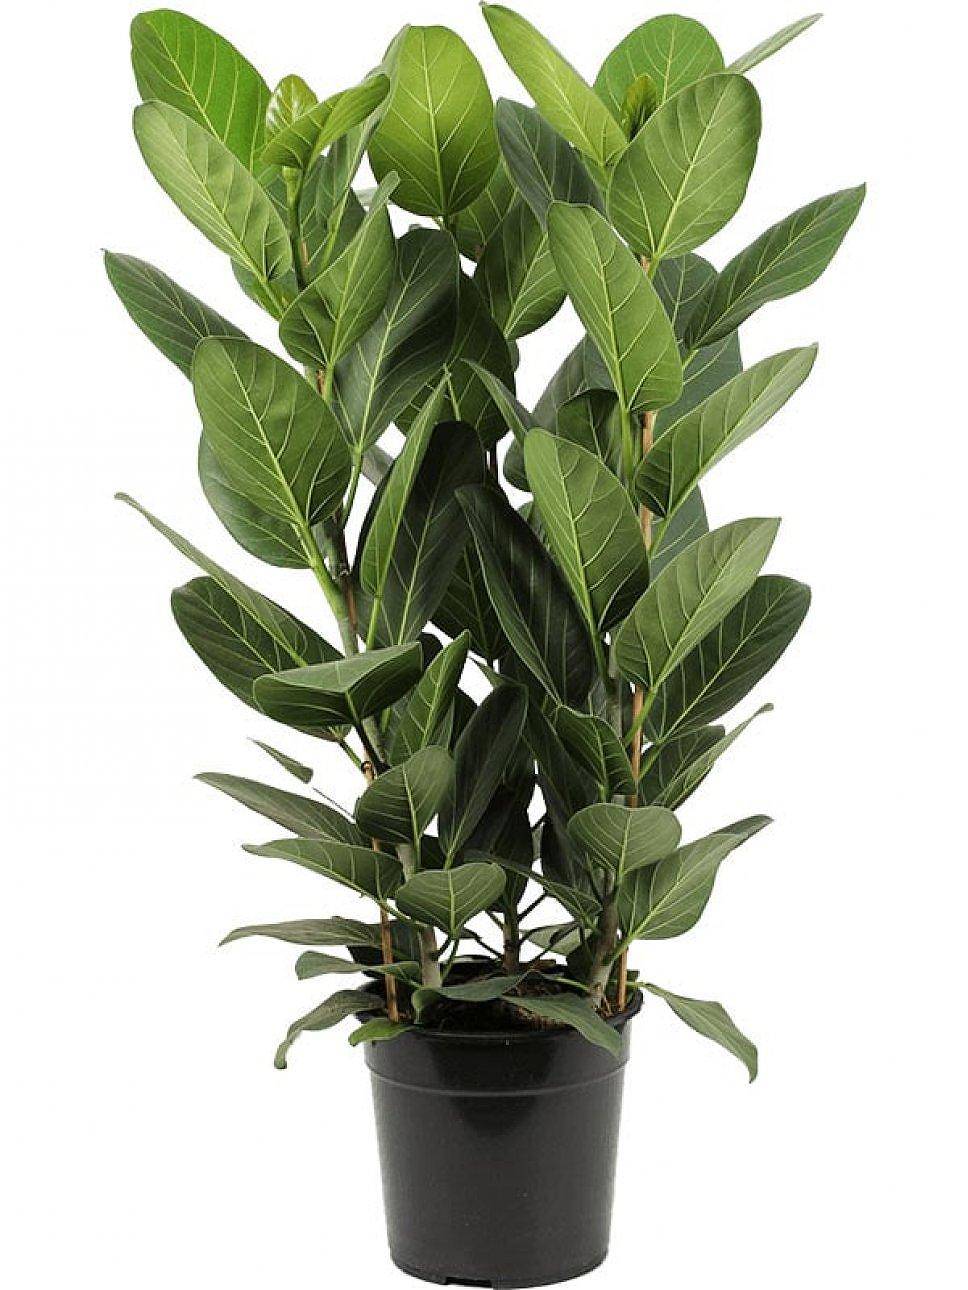 Фикус Бенгальский Одри - Ficus benghalensis "Petite Audrey" D24 H90